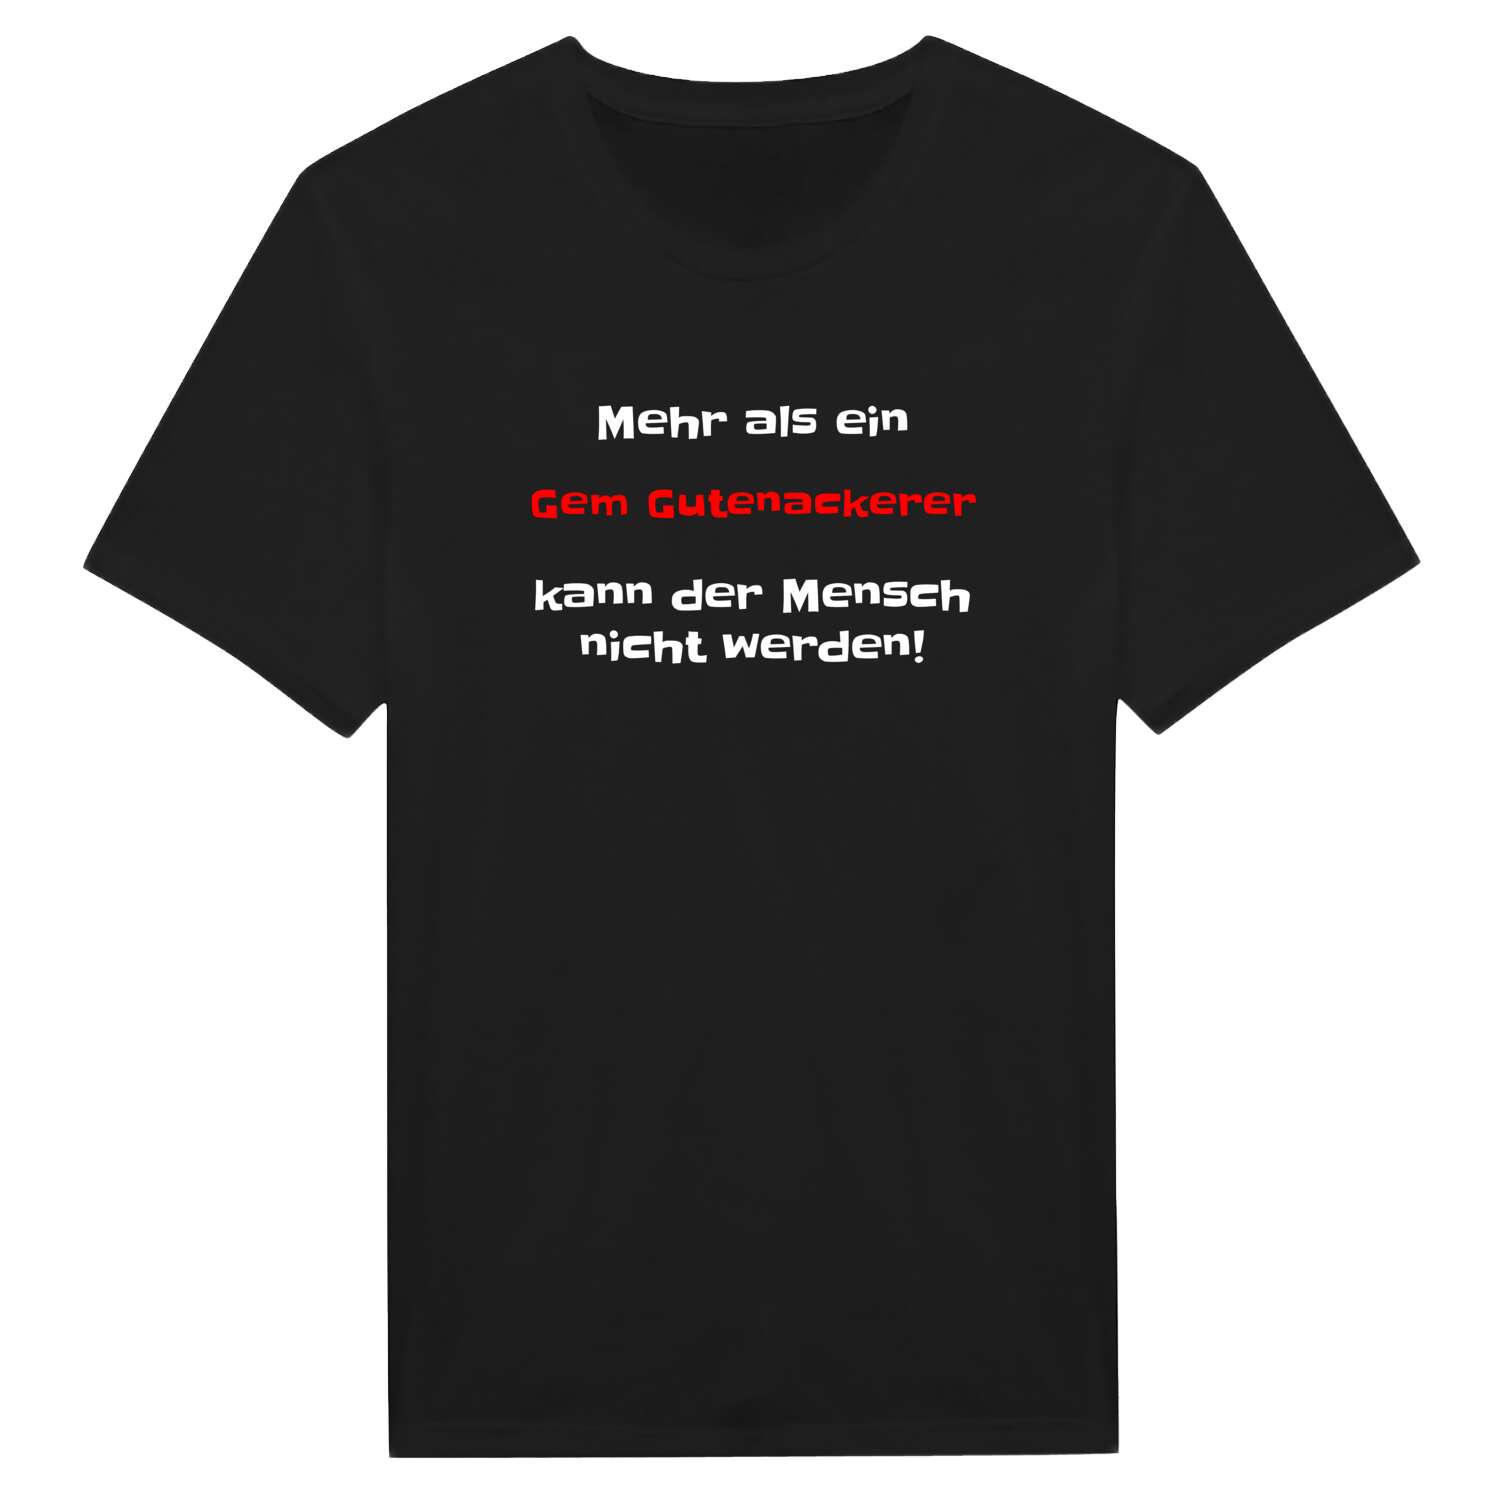 Gem Gutenacker T-Shirt »Mehr als ein«